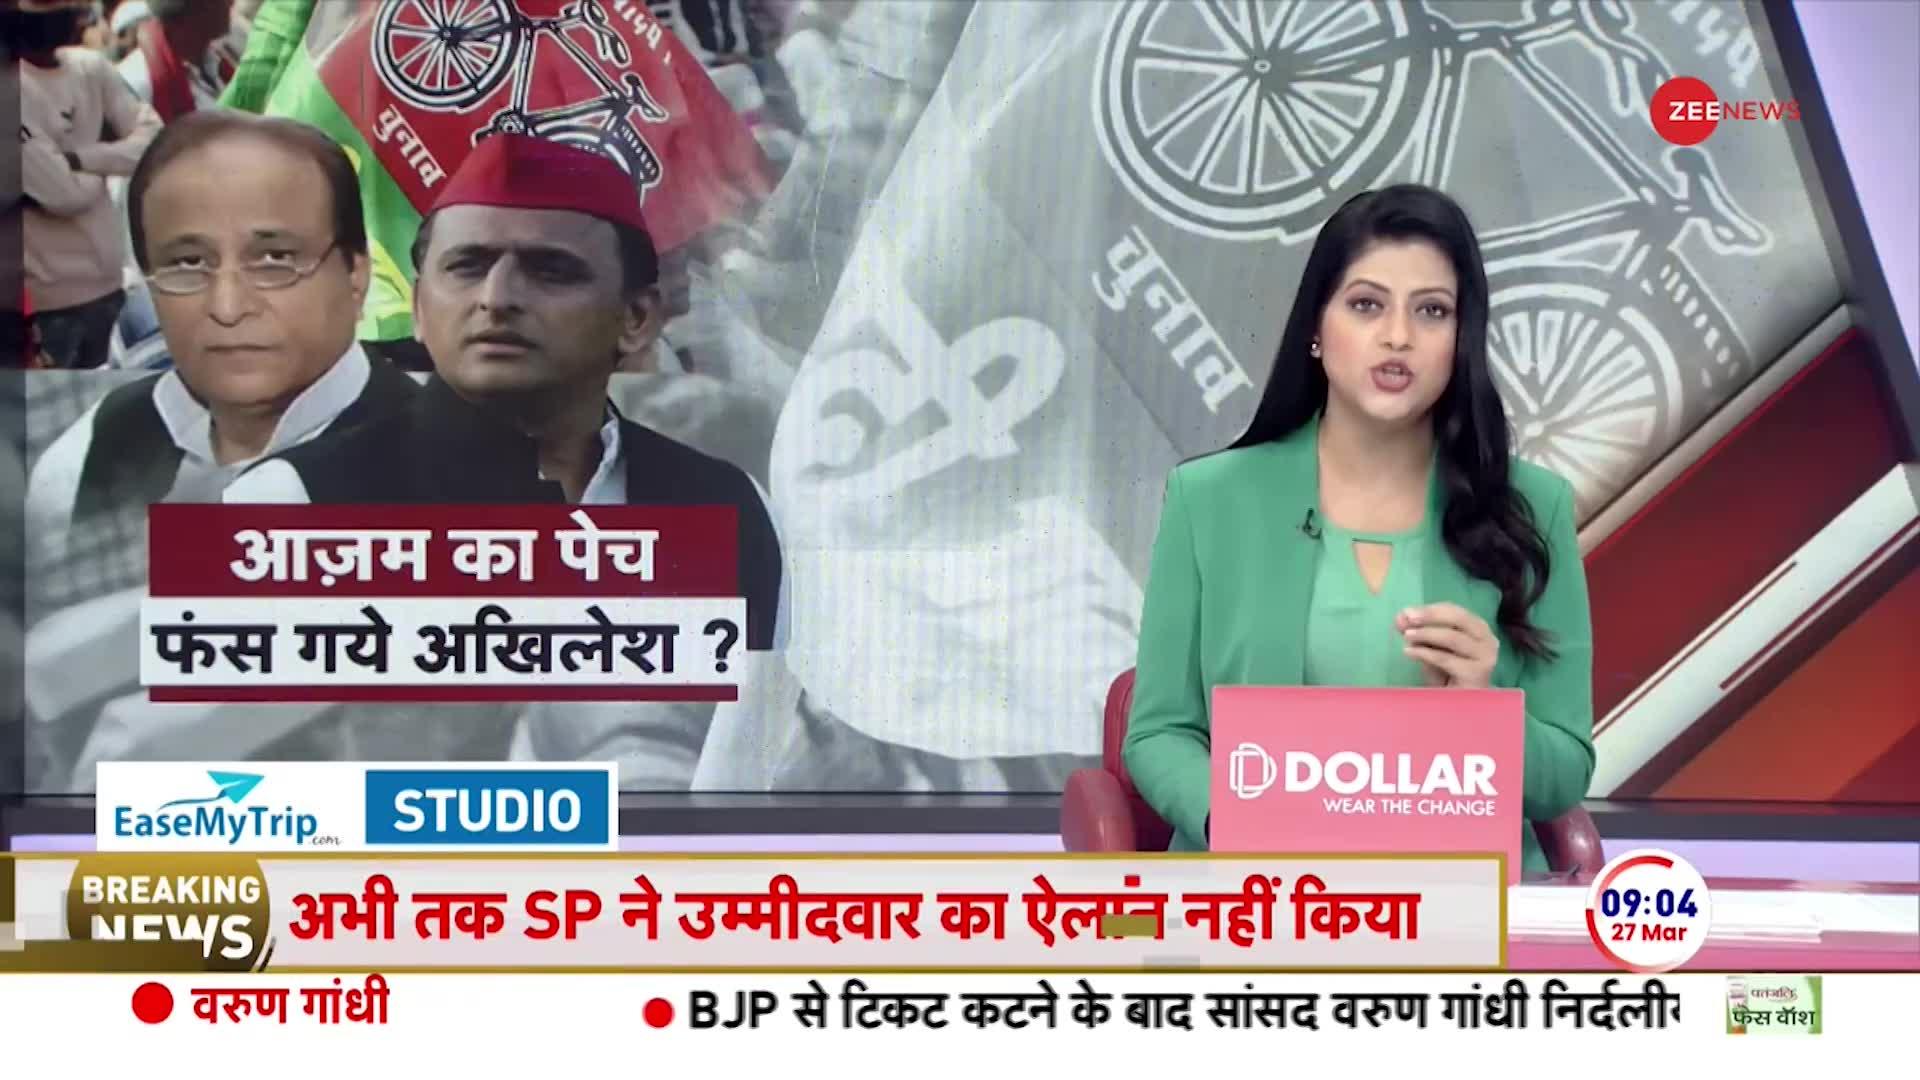 Azam Khan Breaking News: समाजवादी पार्टी ने रामपुर में बहिष्कार की धमकी दी